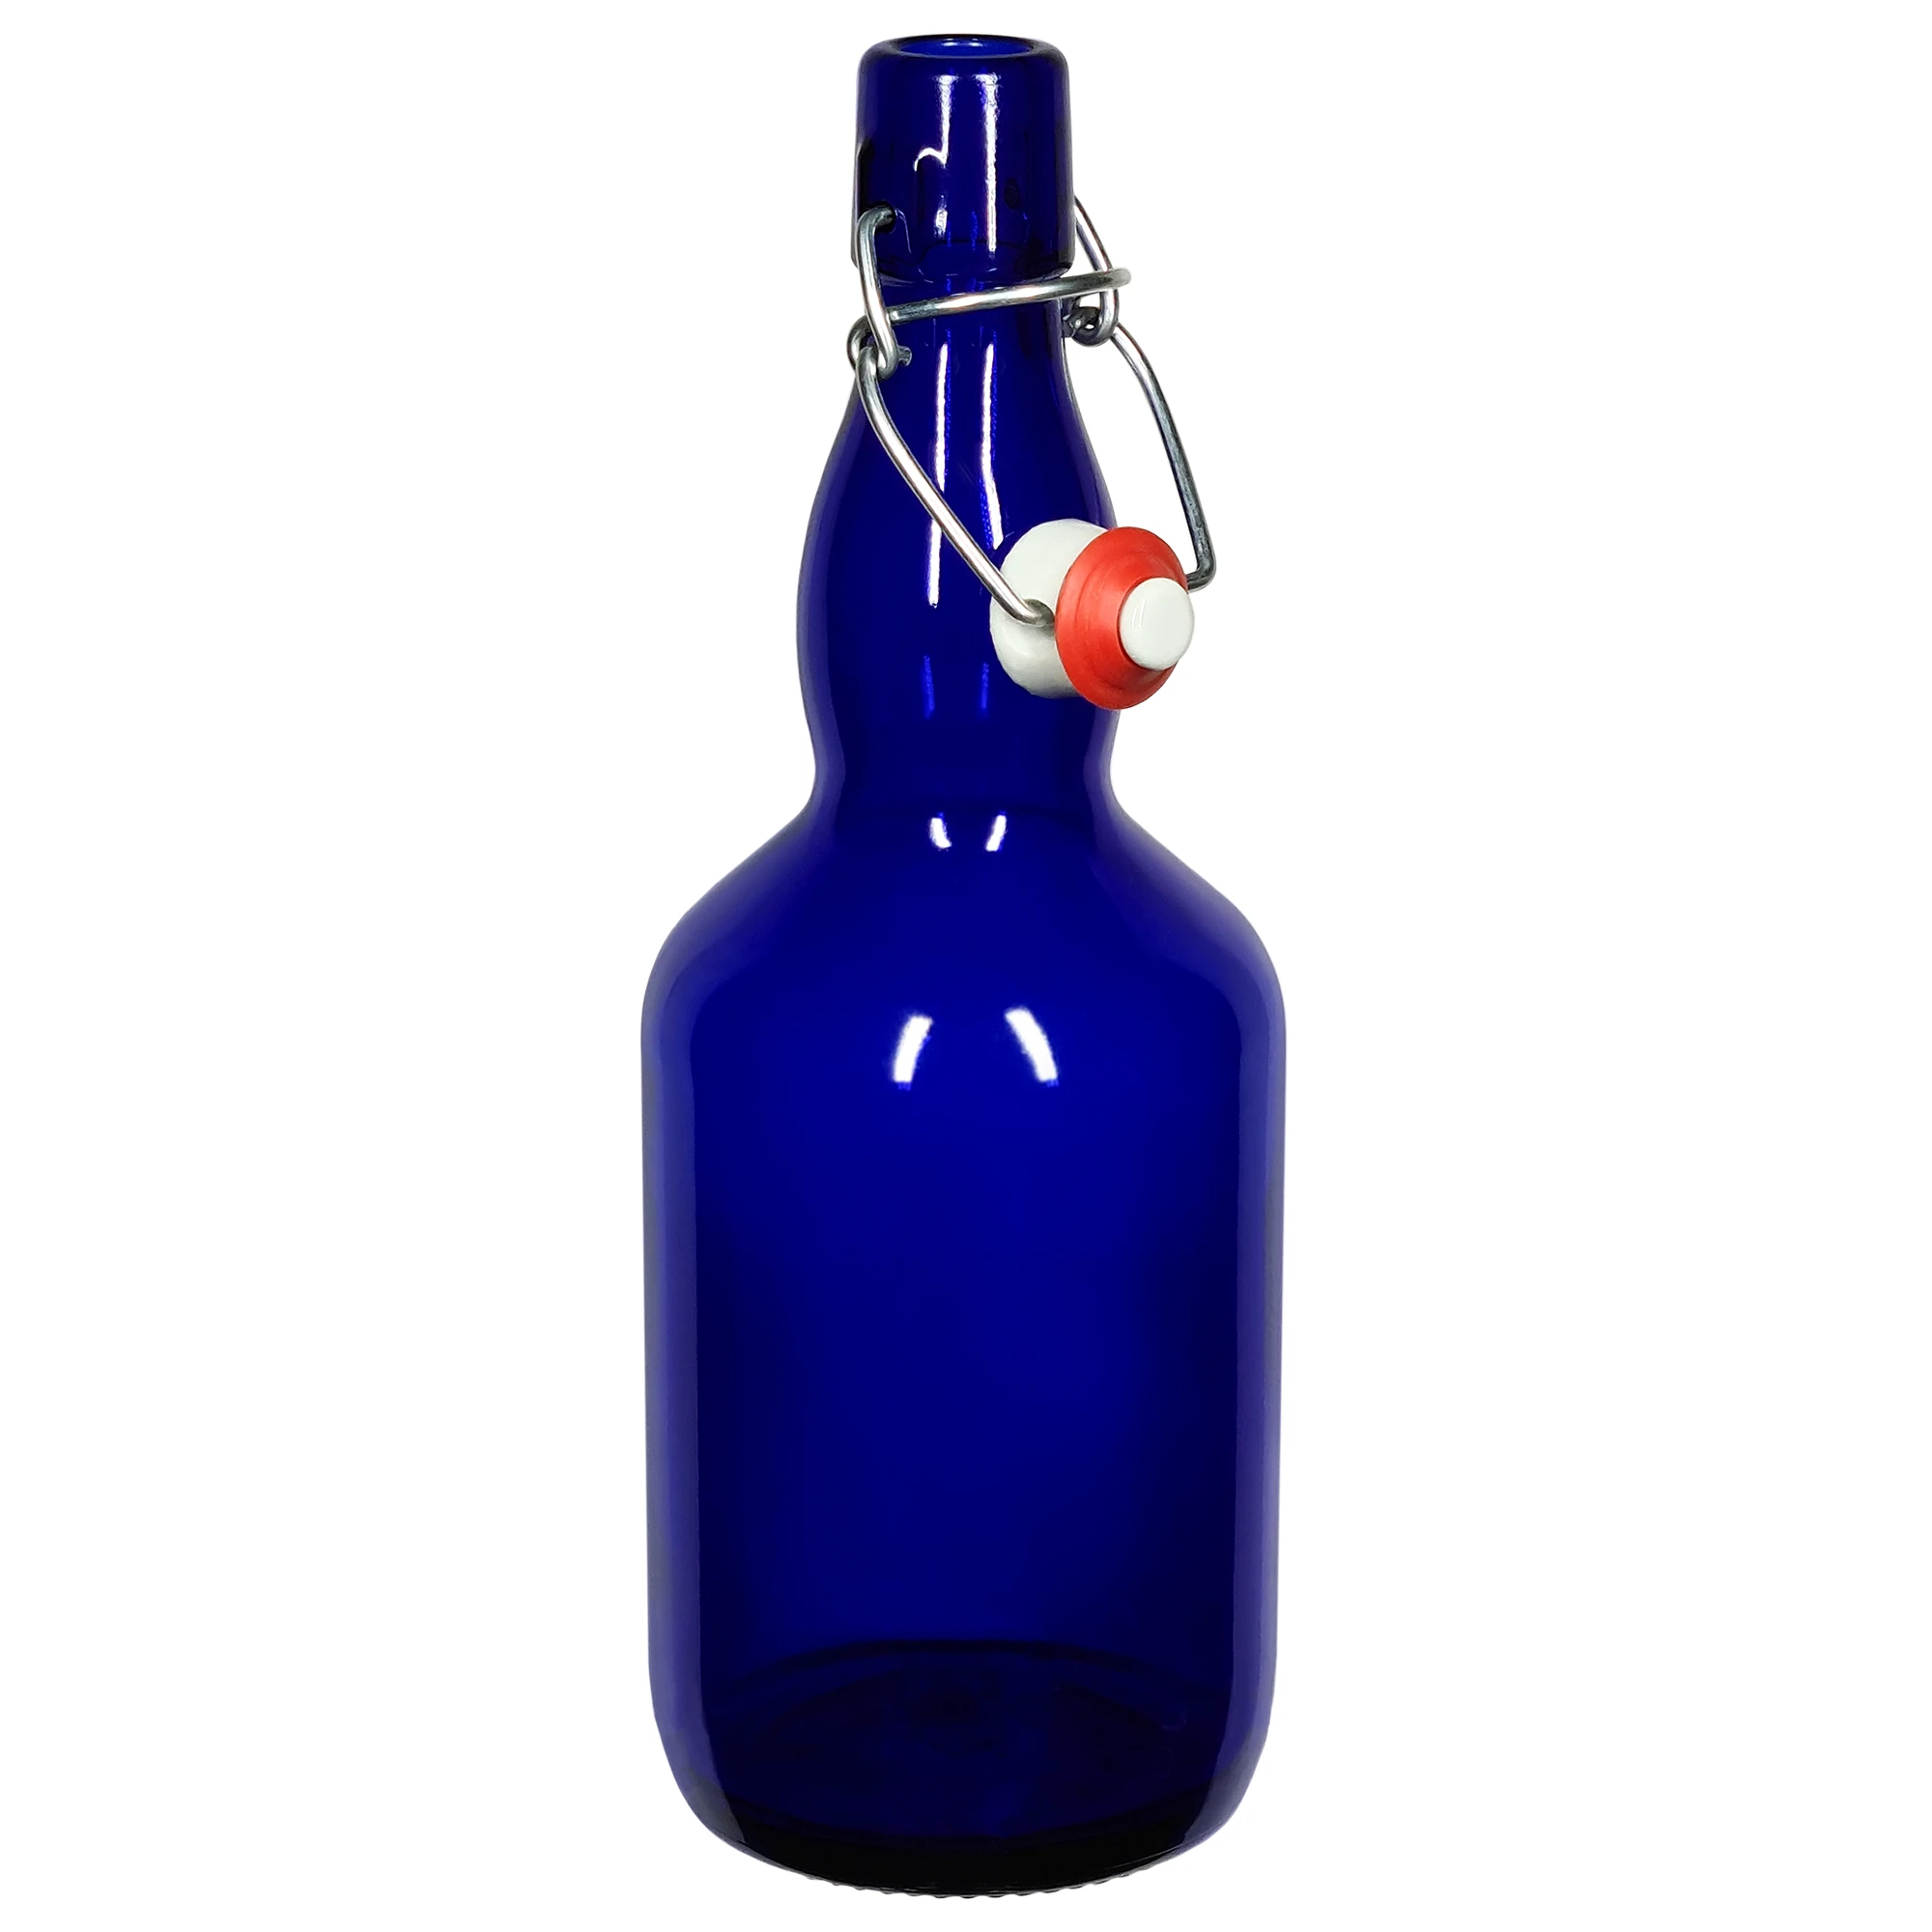 Dunkelblaue, fast undurchsichtige, Glasflasche. Die Flasche ist bauchig und hat einen längeren Hals. Der Bügelverschluss, mit einem weißen Keramikdeckel, ist geöffnet.